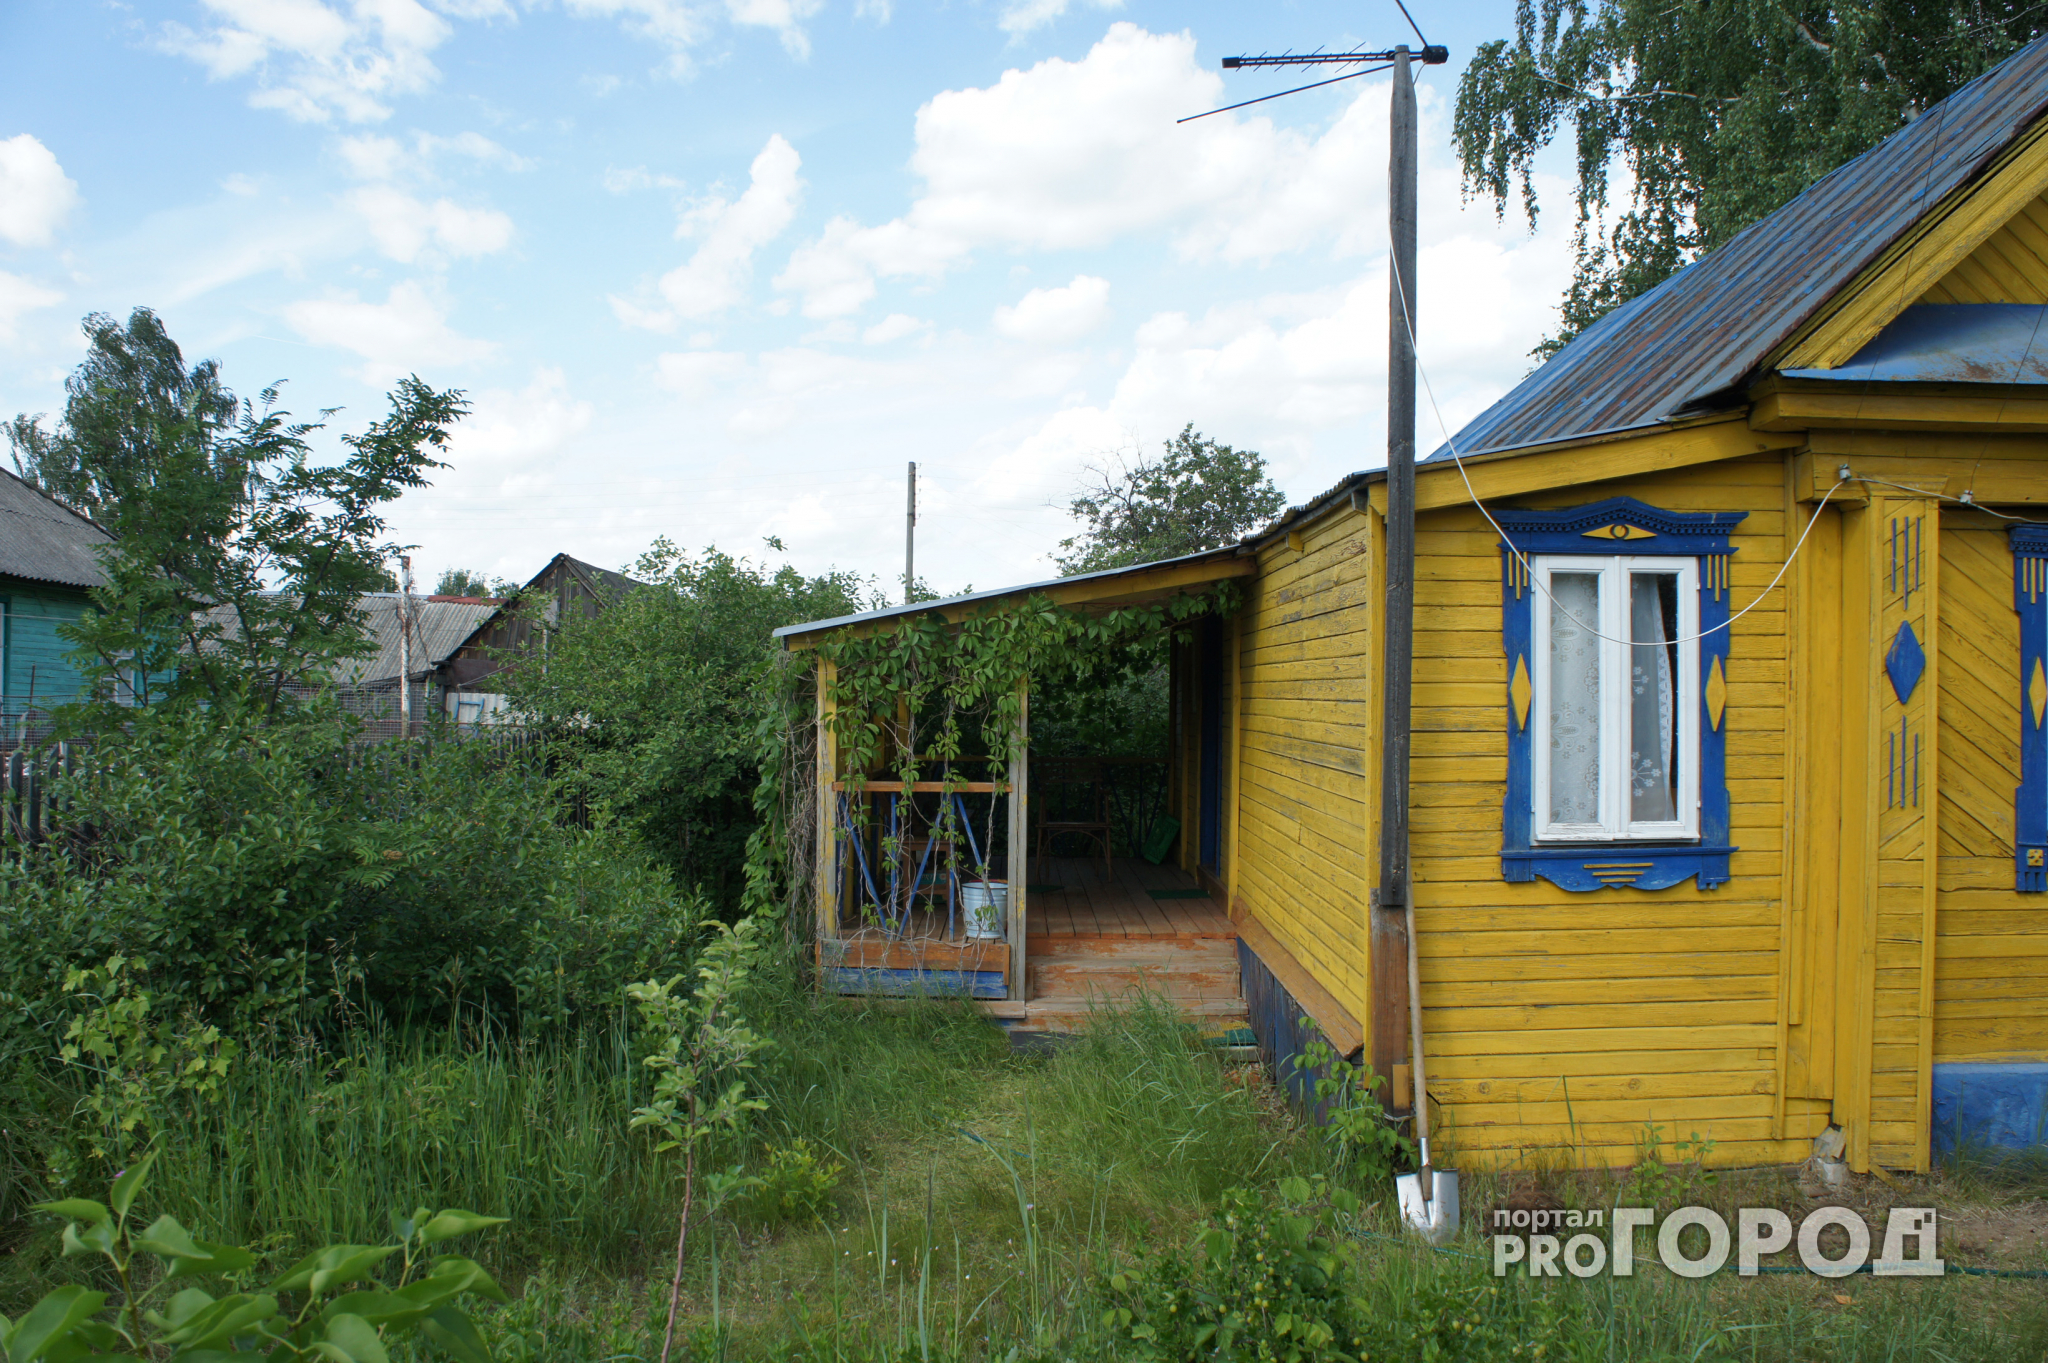 «Голодный» вор похитил из дачного дома в Ярославской области продукты